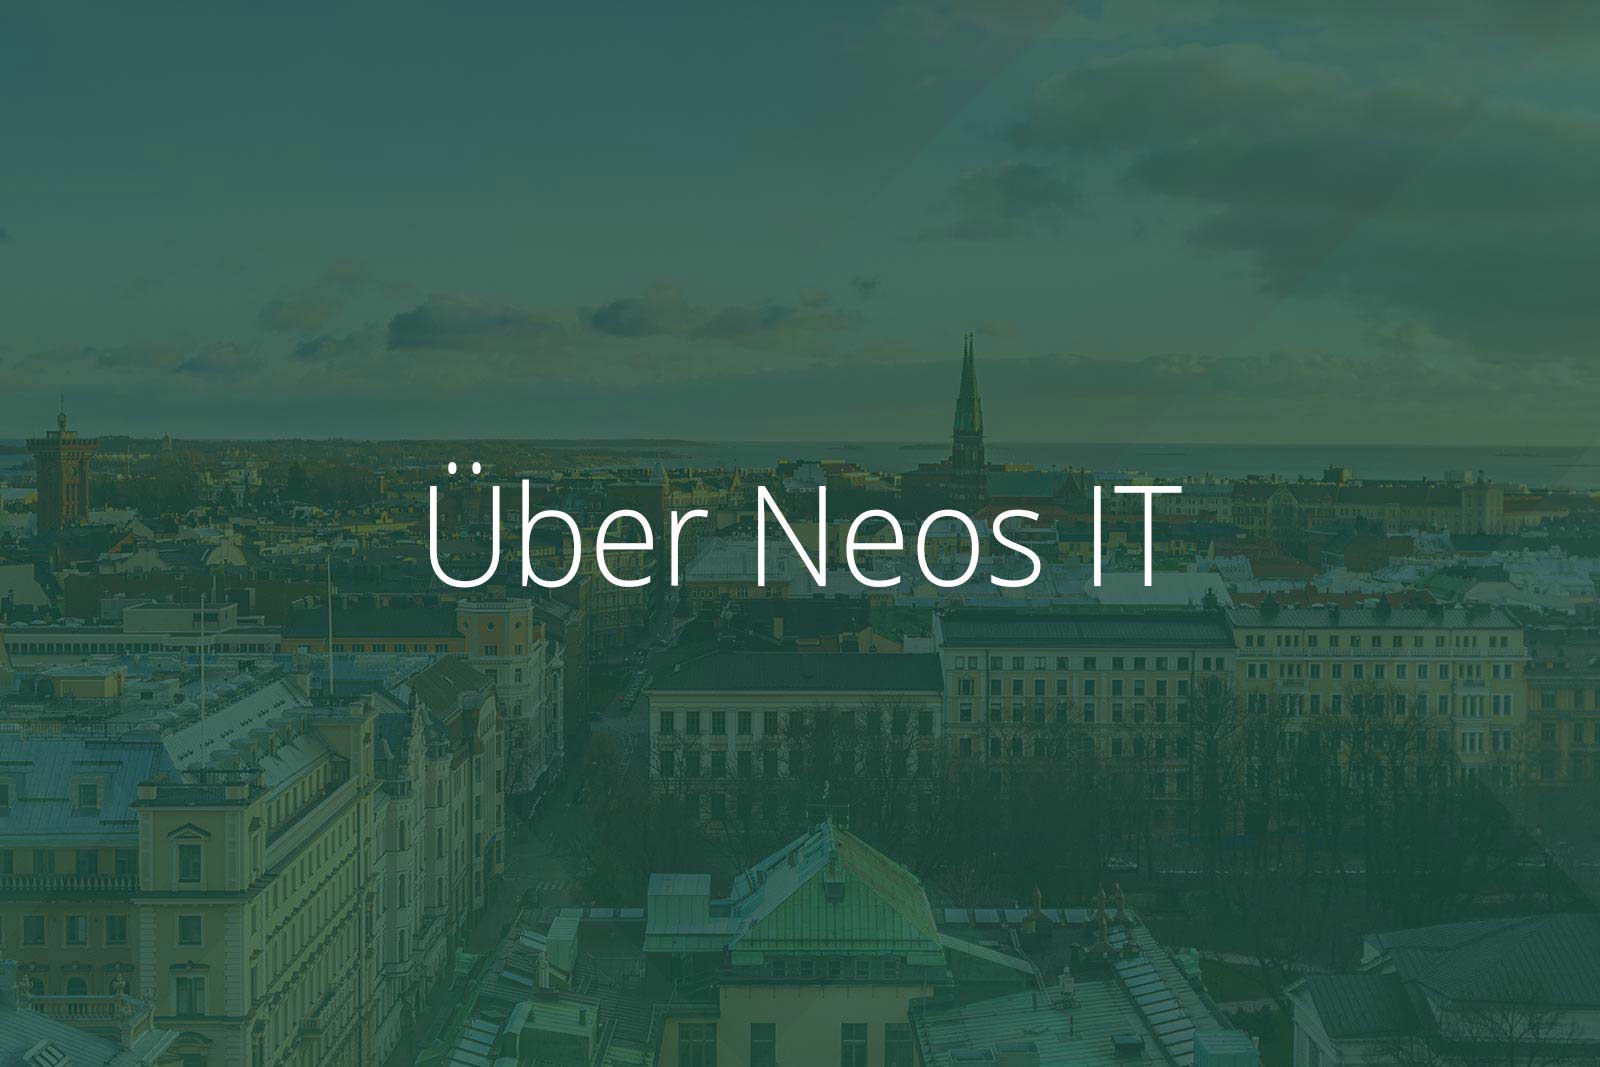 Über Neos IT Services, Abbildung Helsinki